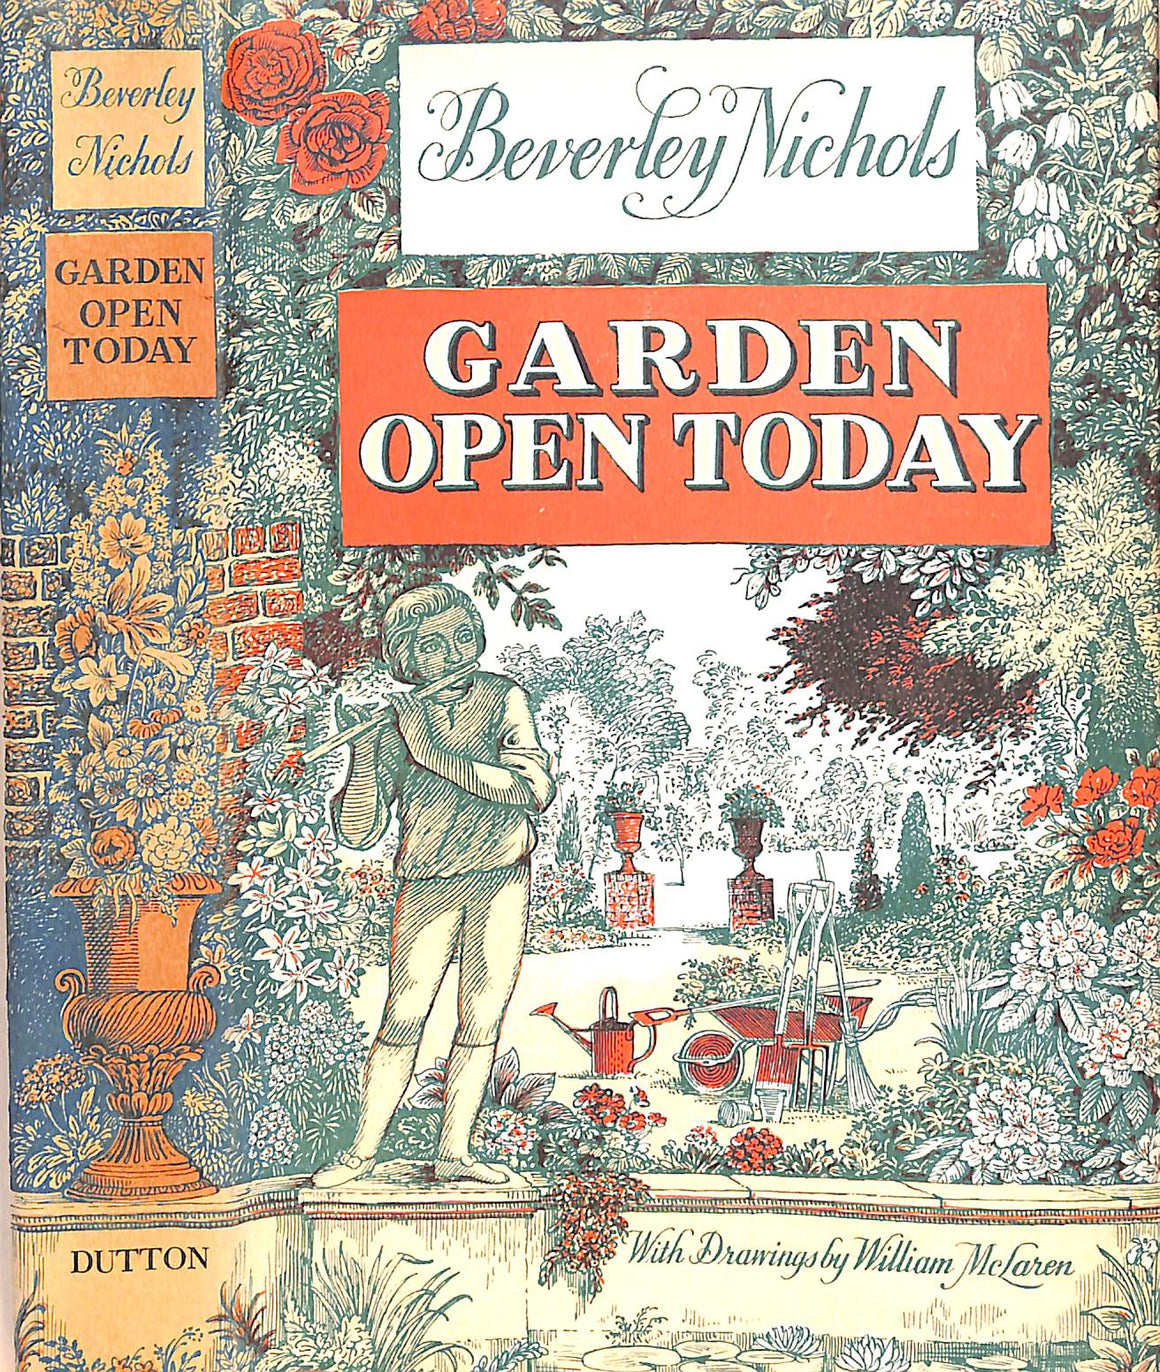 "Garden Open Today" 1963 NICHOLS, Beverley